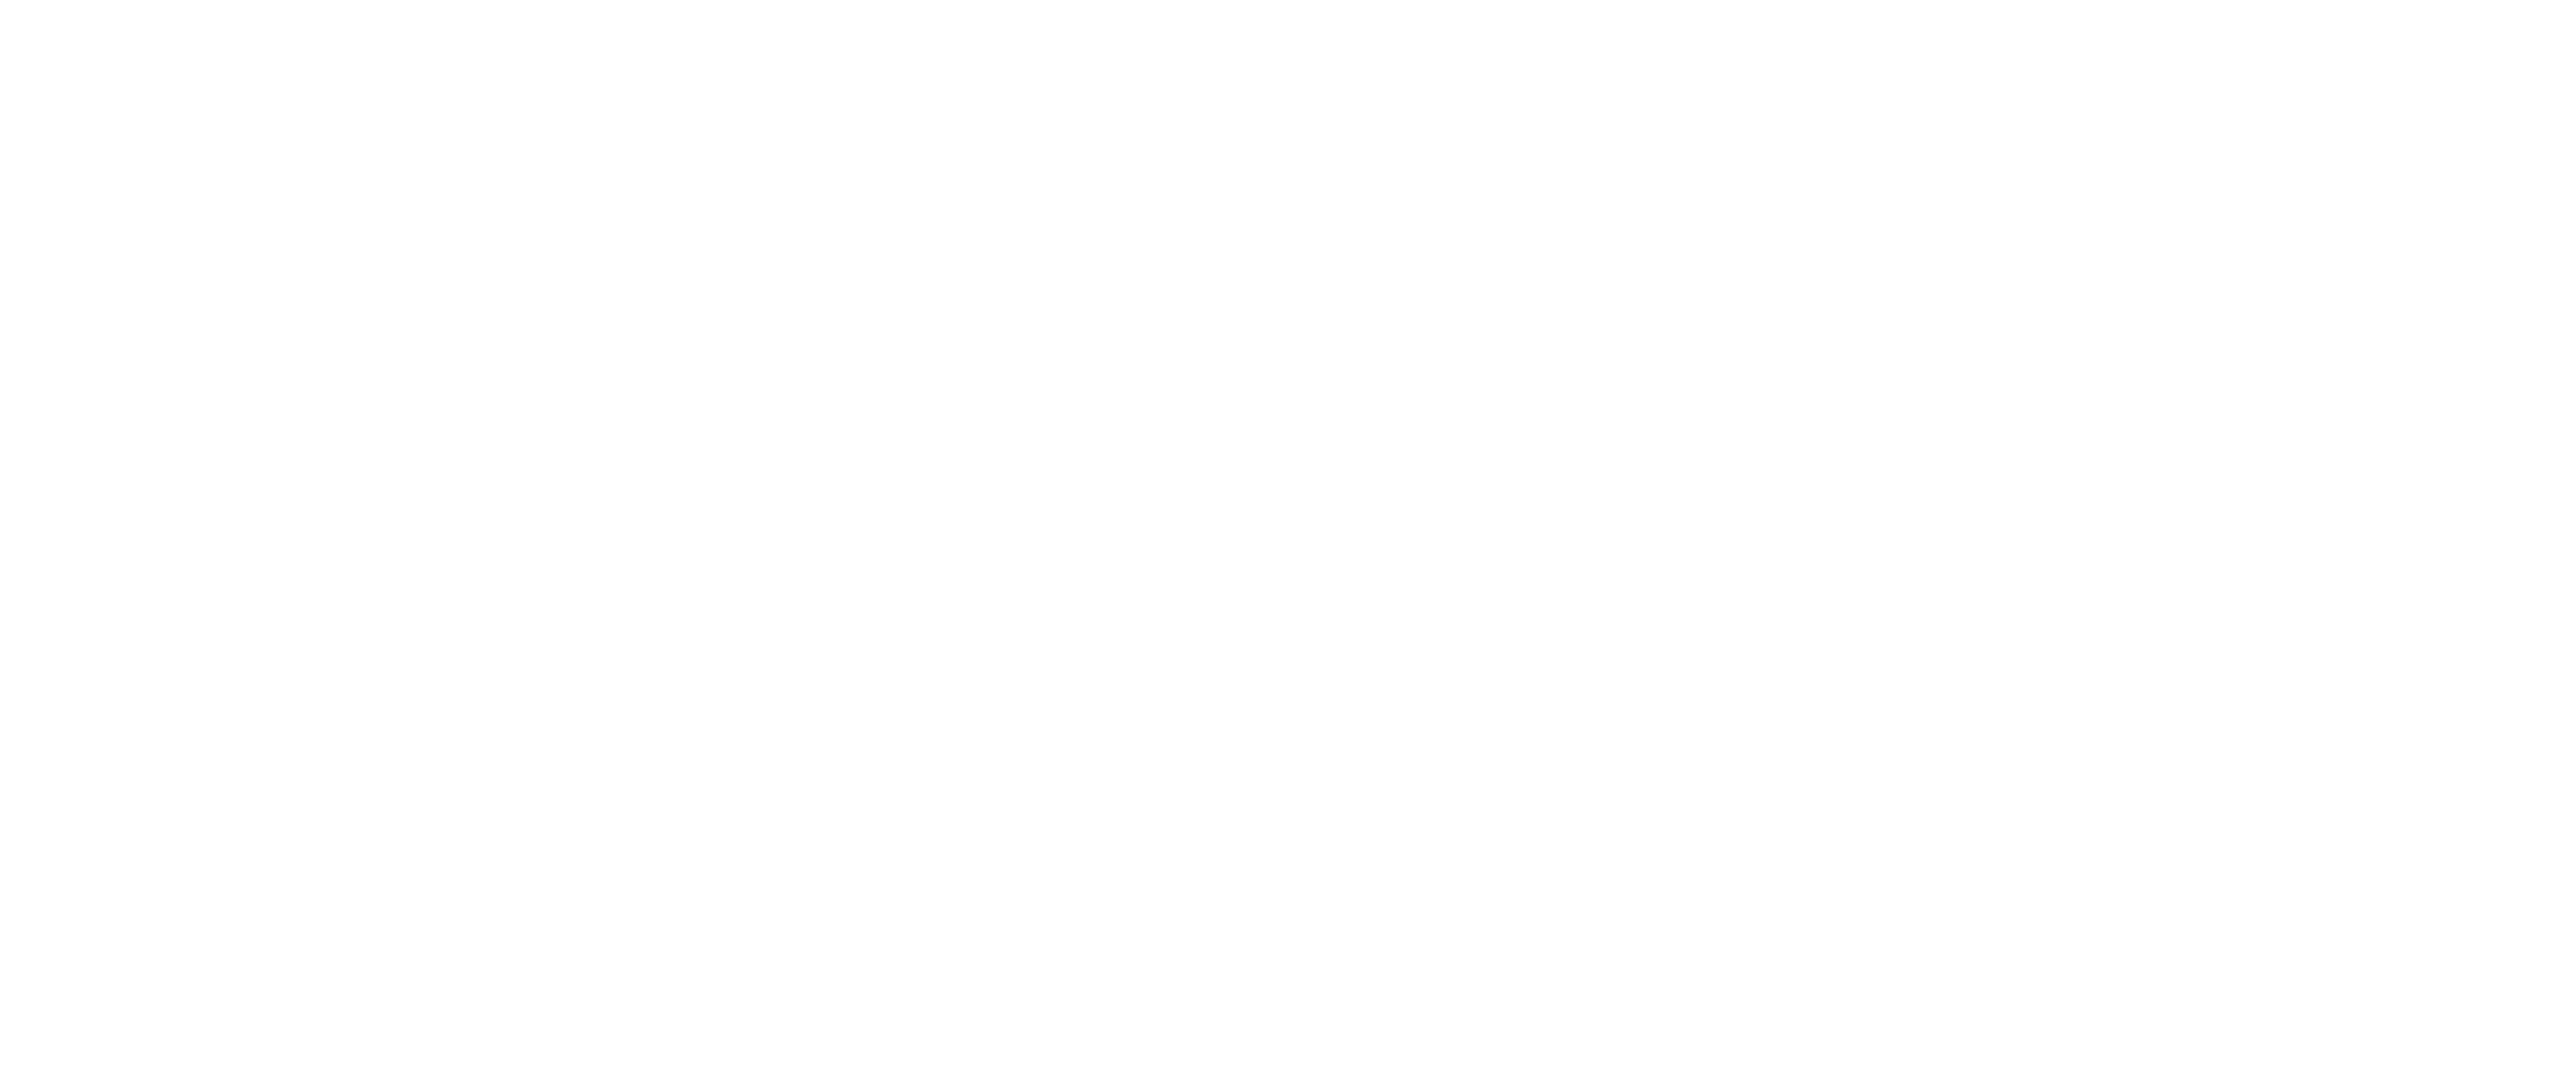 Lifestarter